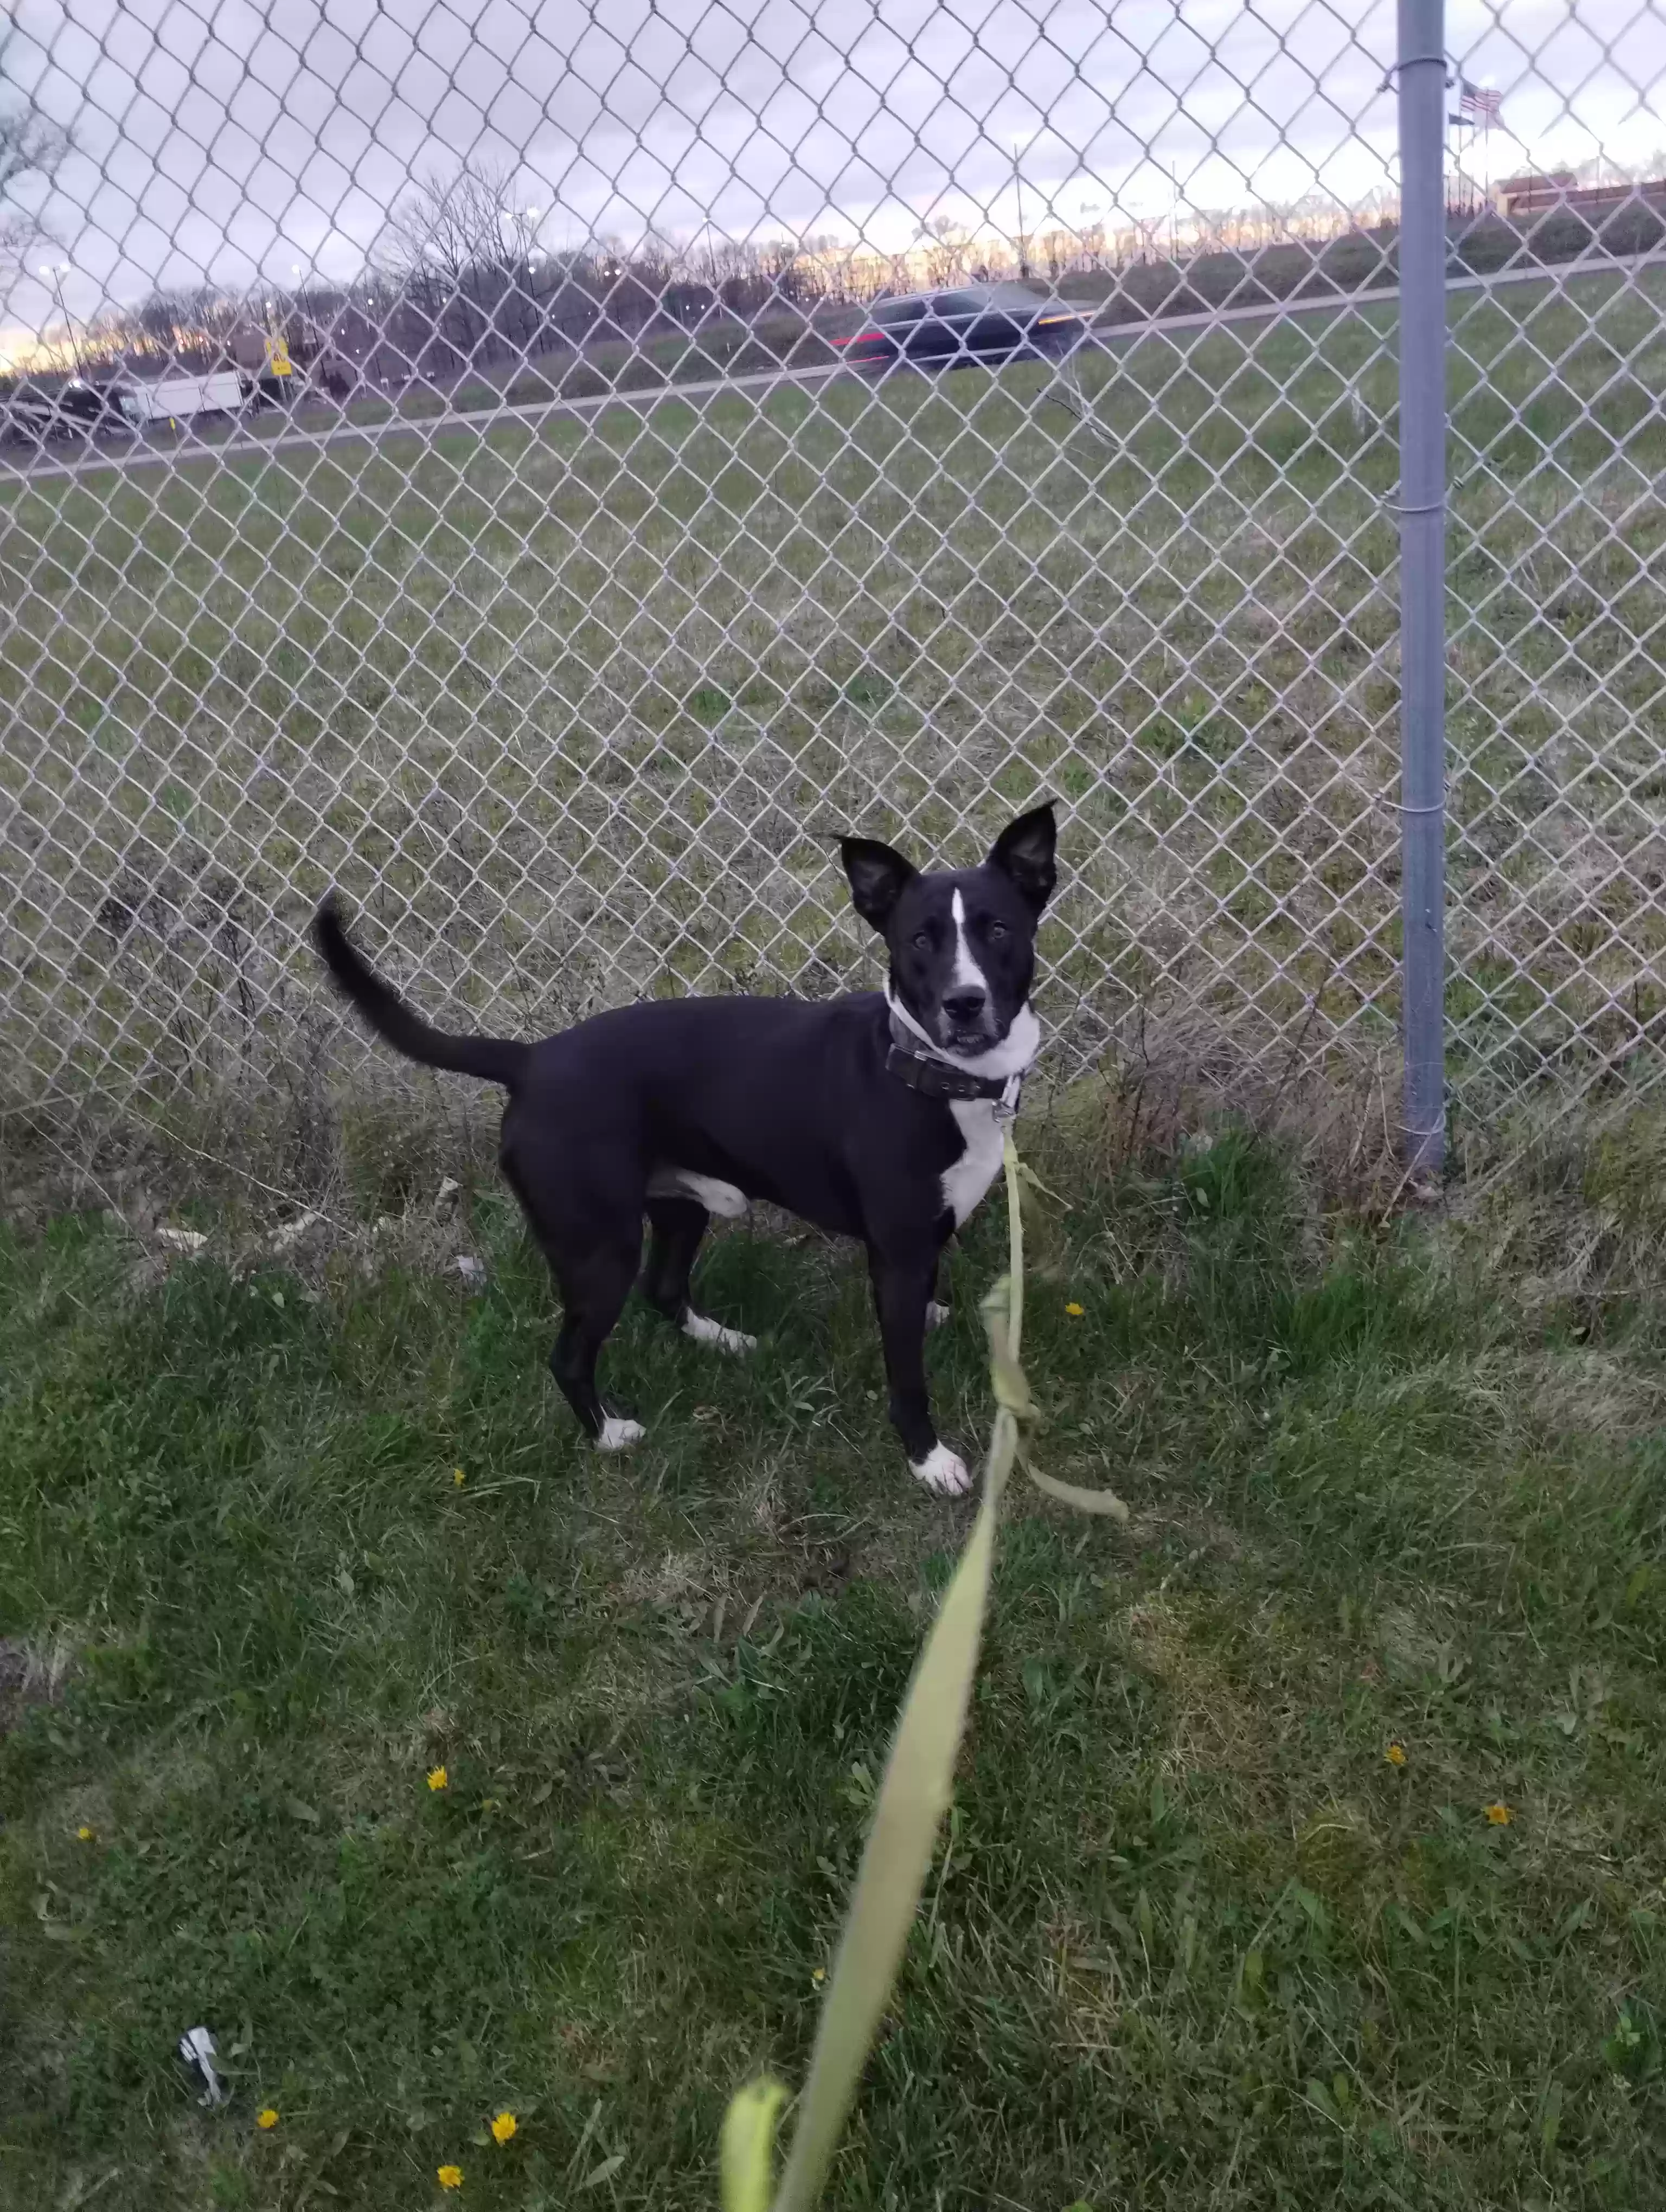 adoptable Dog in Portsmouth,NH named Duke